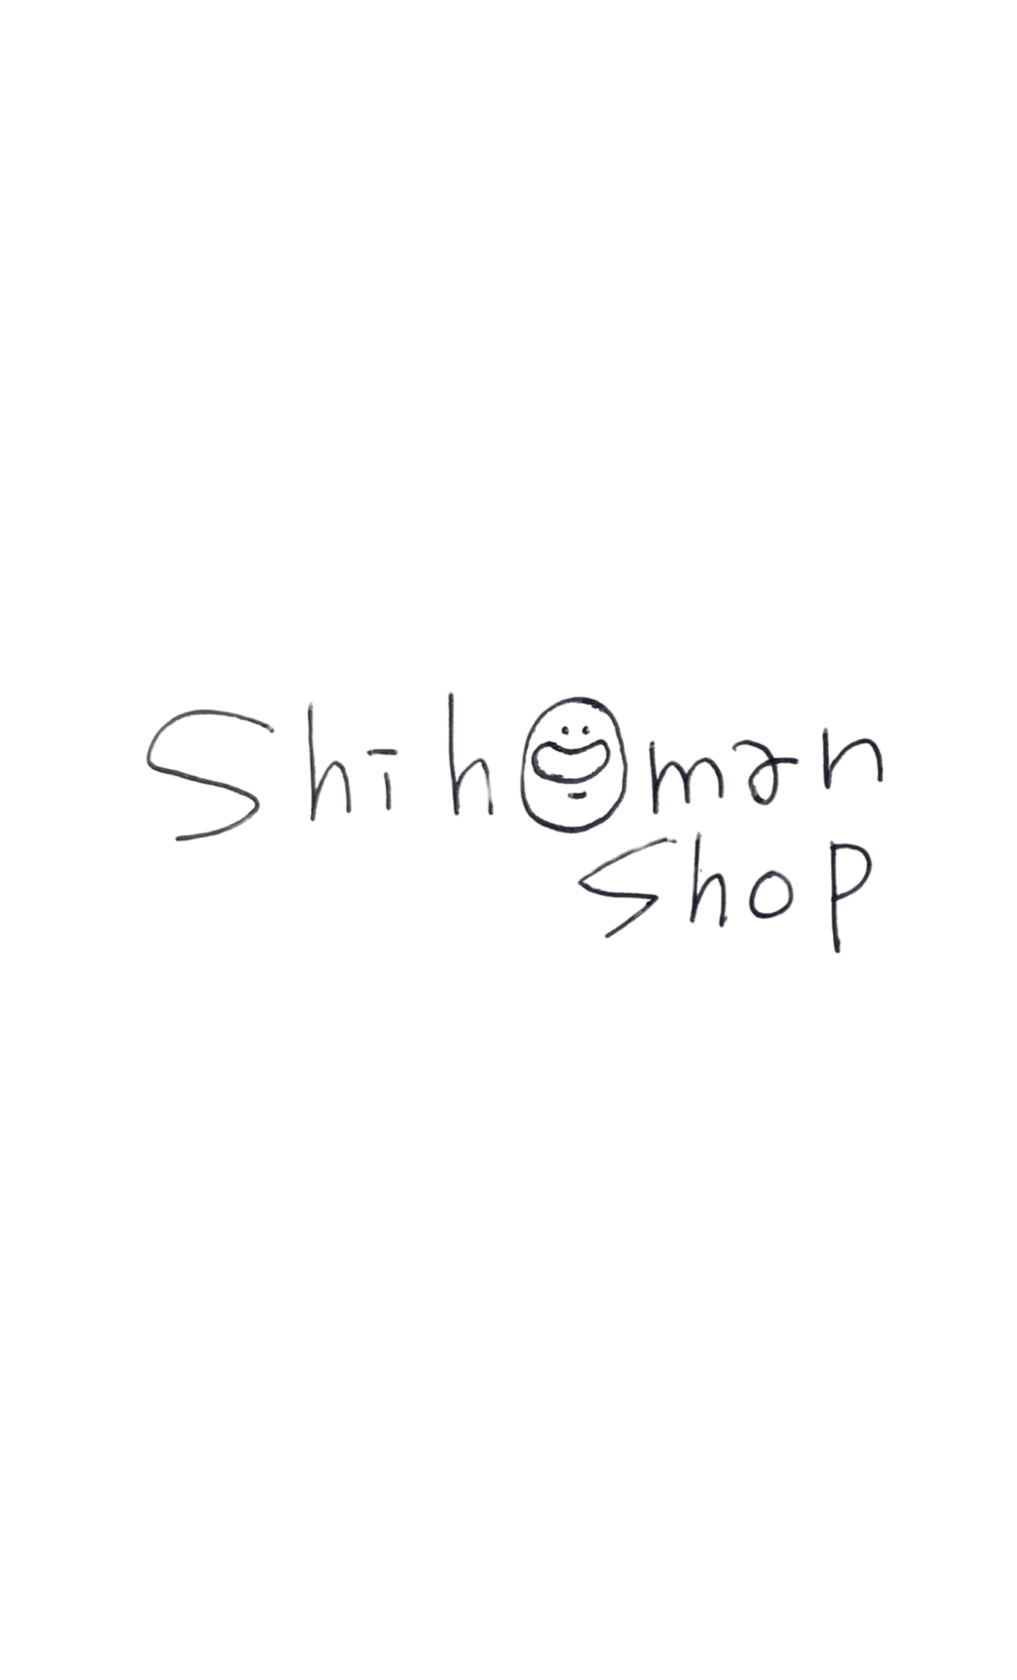 shihomanshop